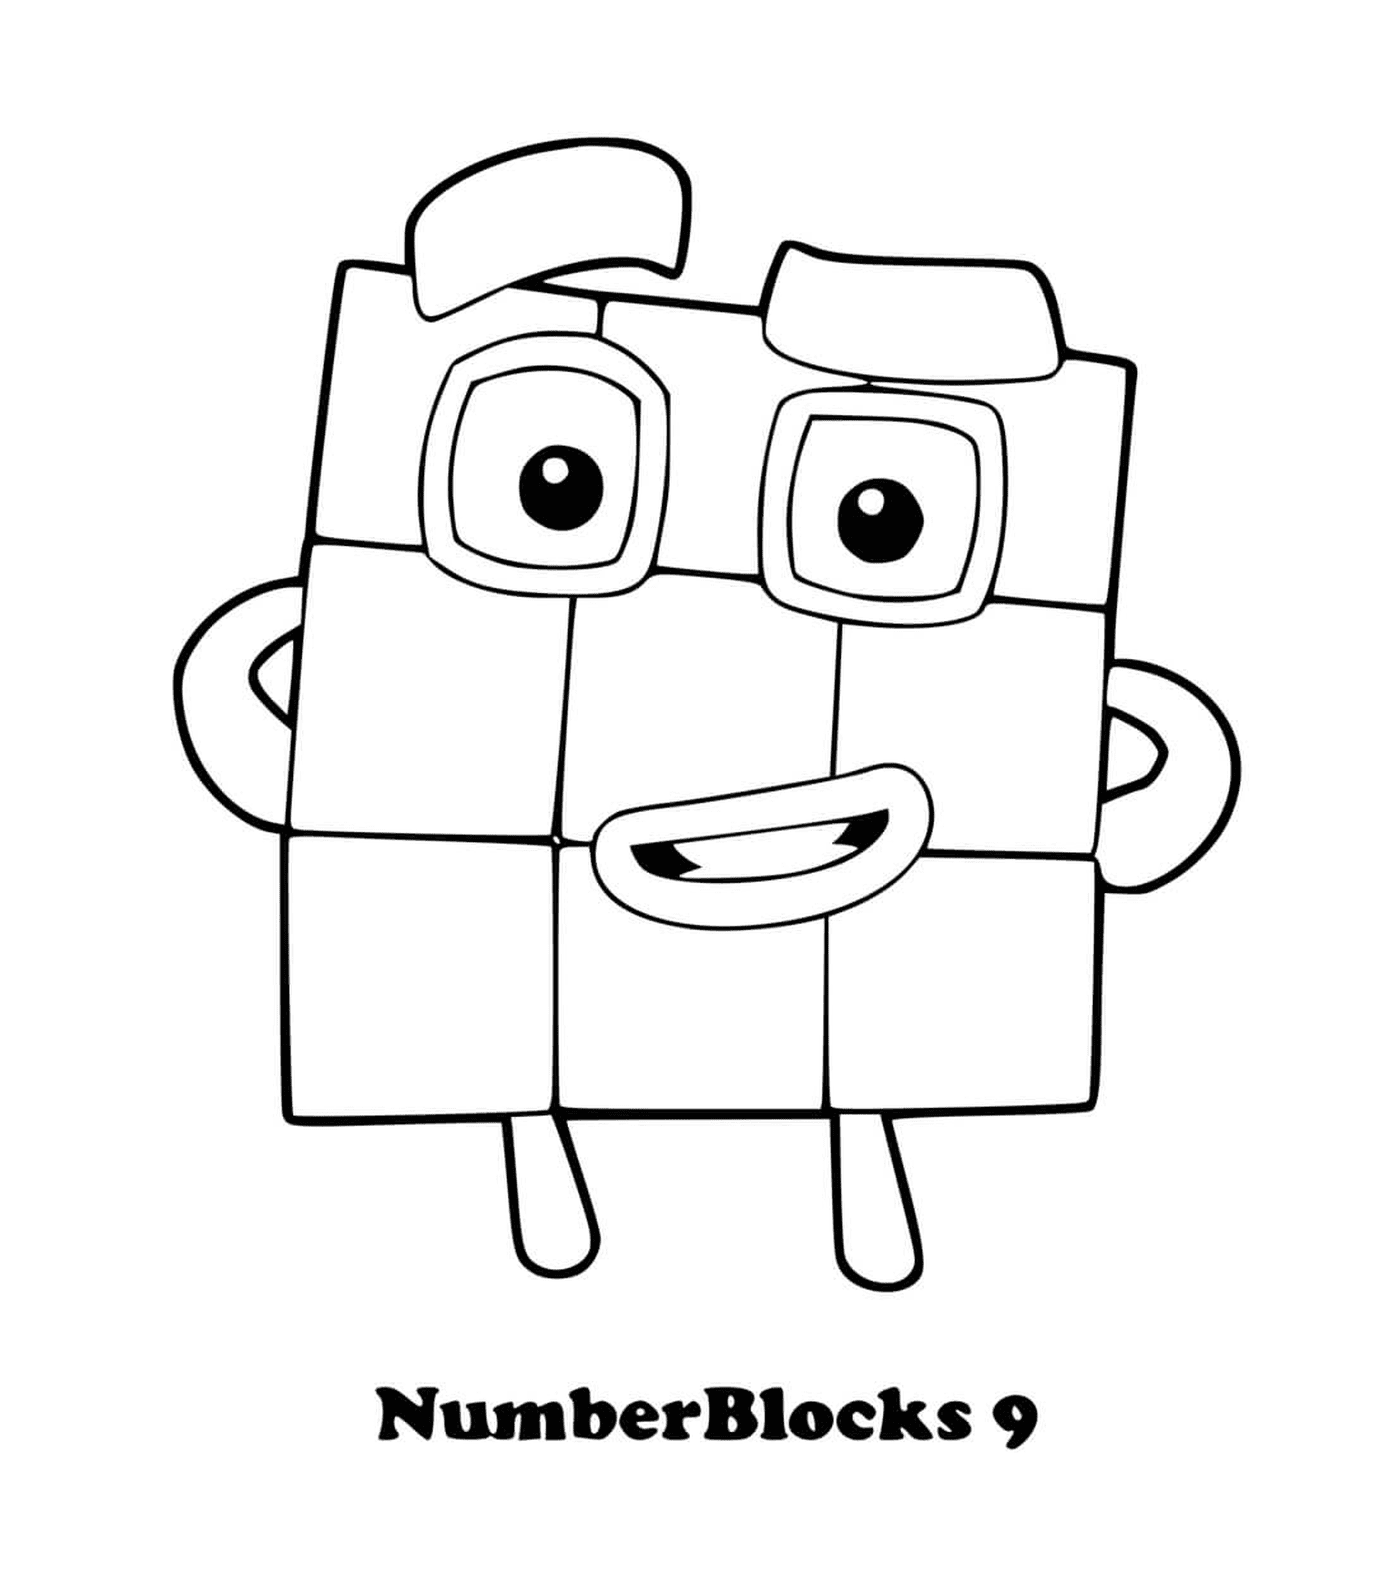  Numberblocks número 9, un cuadrado con ojos 